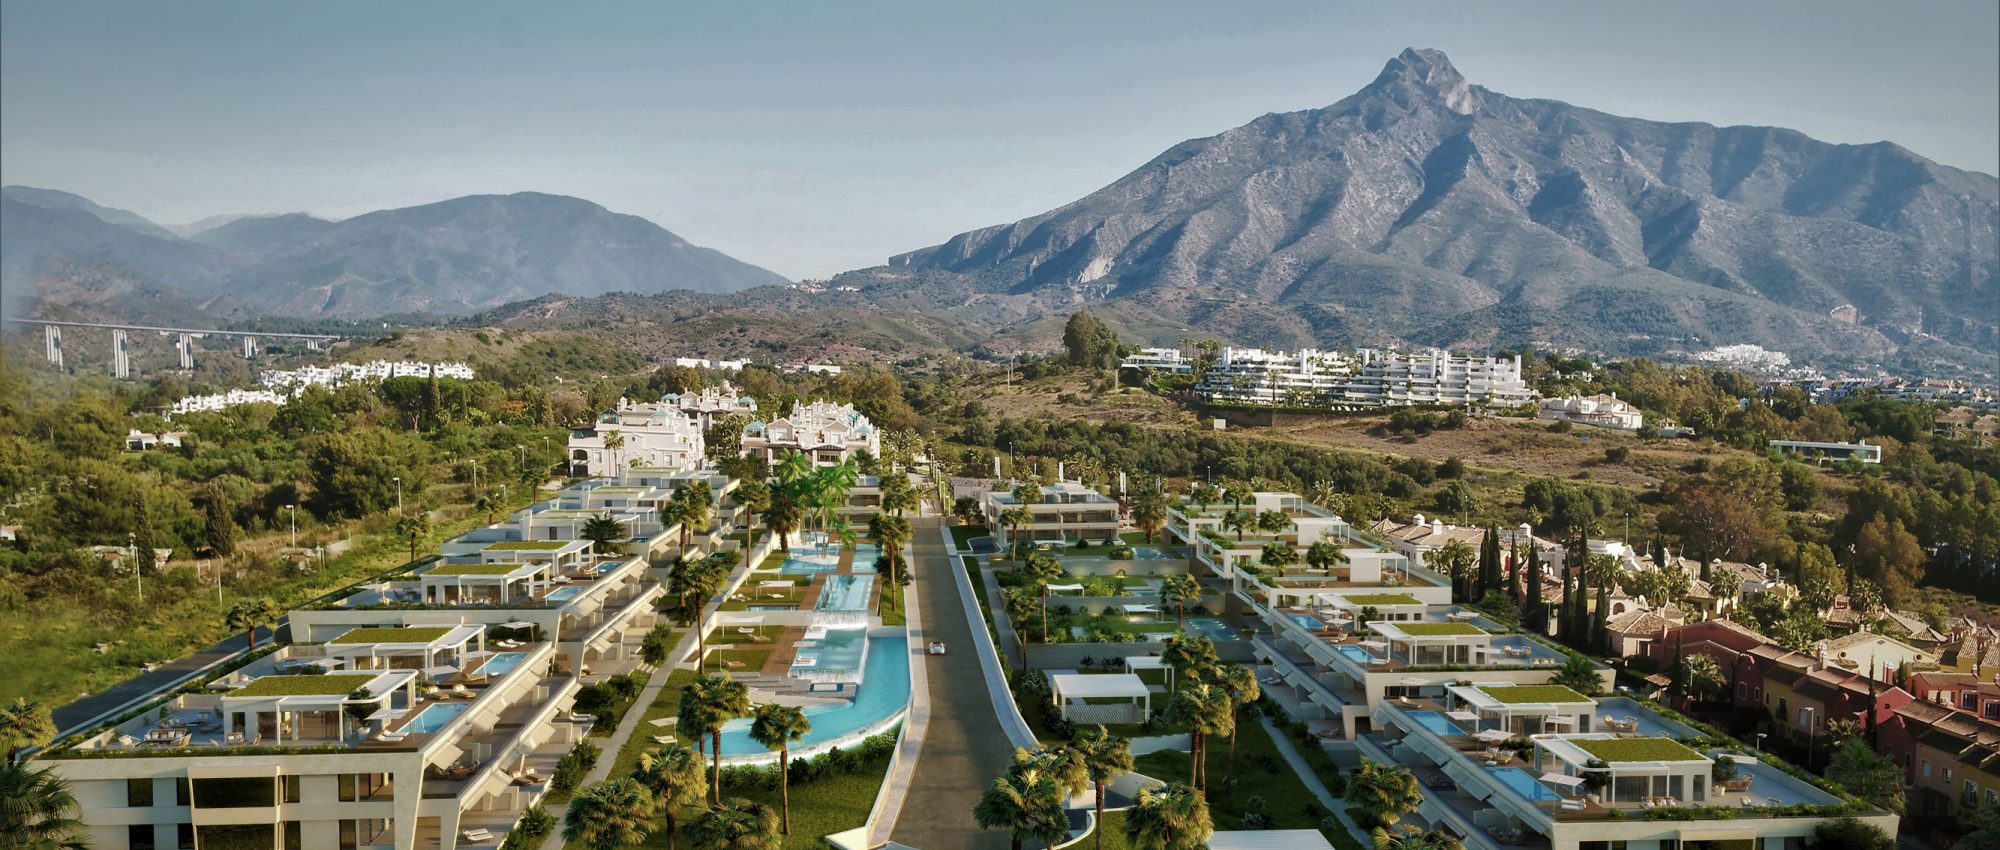 EPIC Marbella – Ein privater Komplex von hochrangigen Häusern – Der wahre Luxus